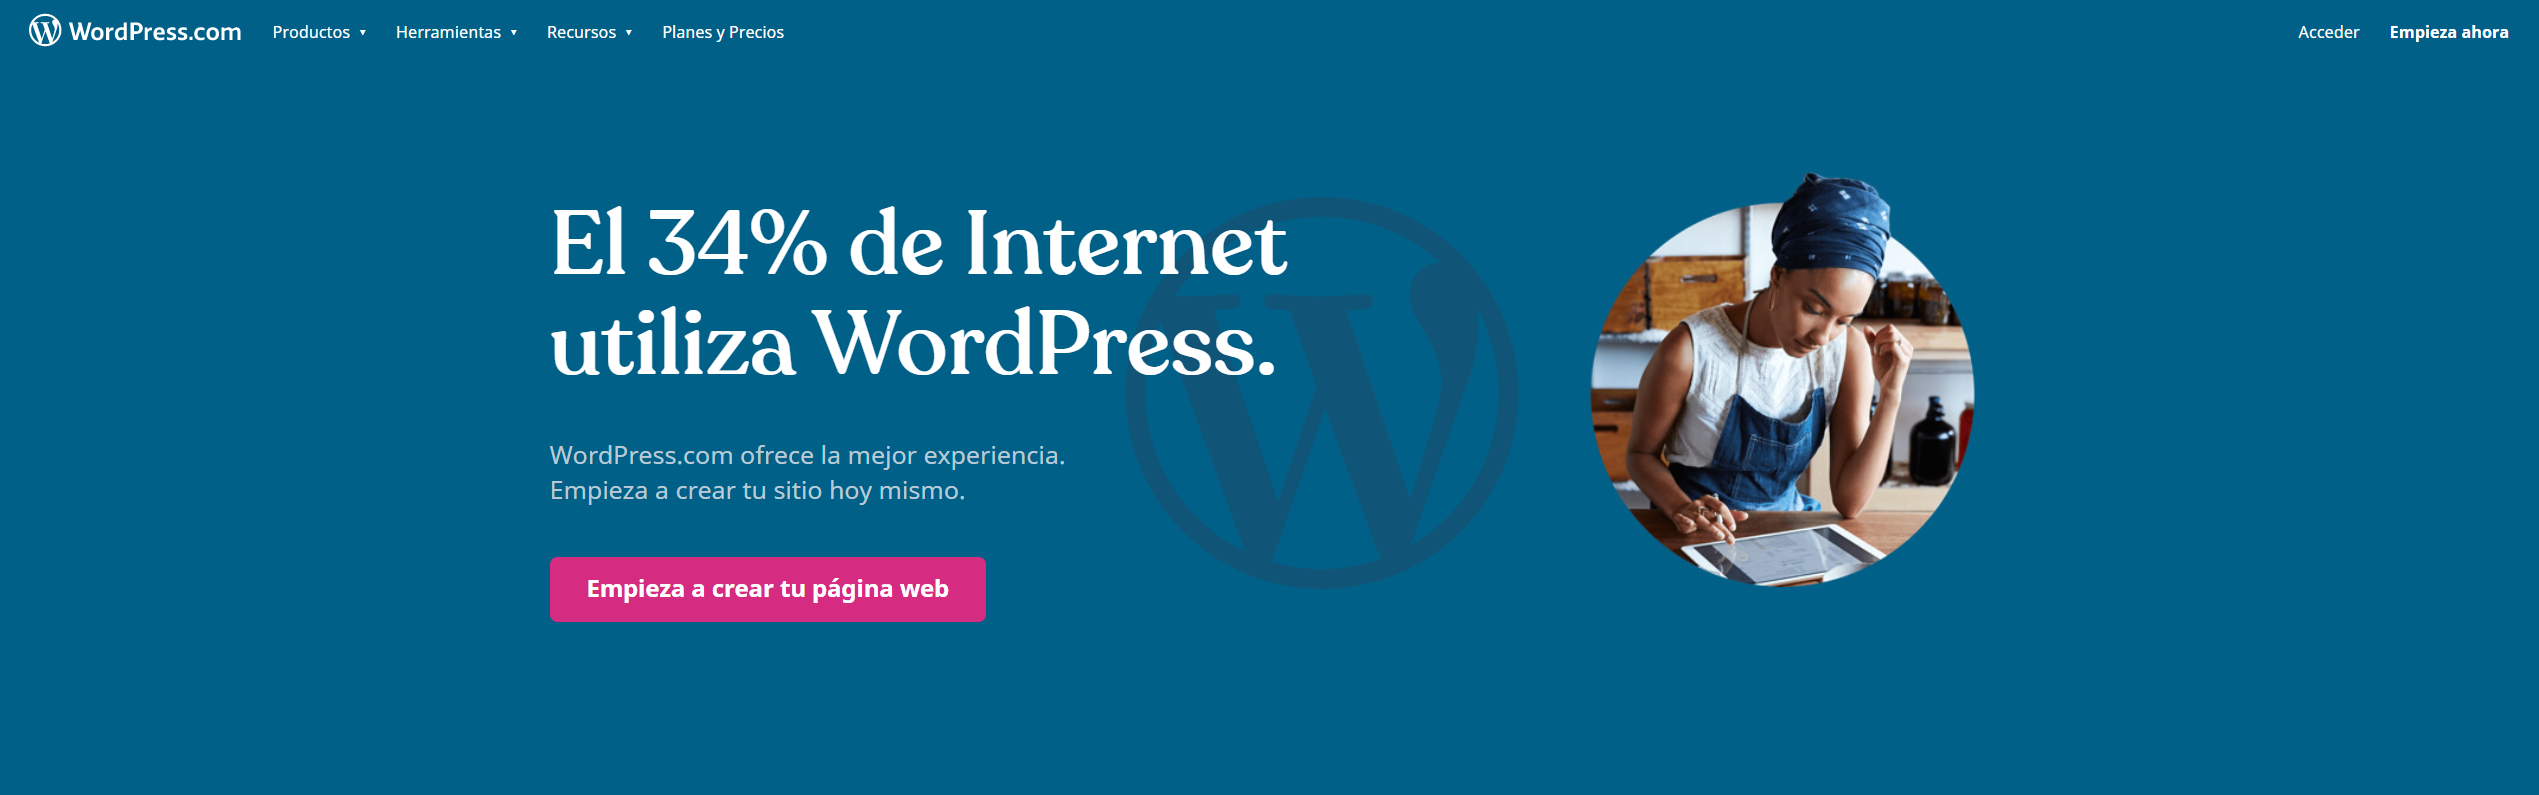 Crea una página web con WordPress.com